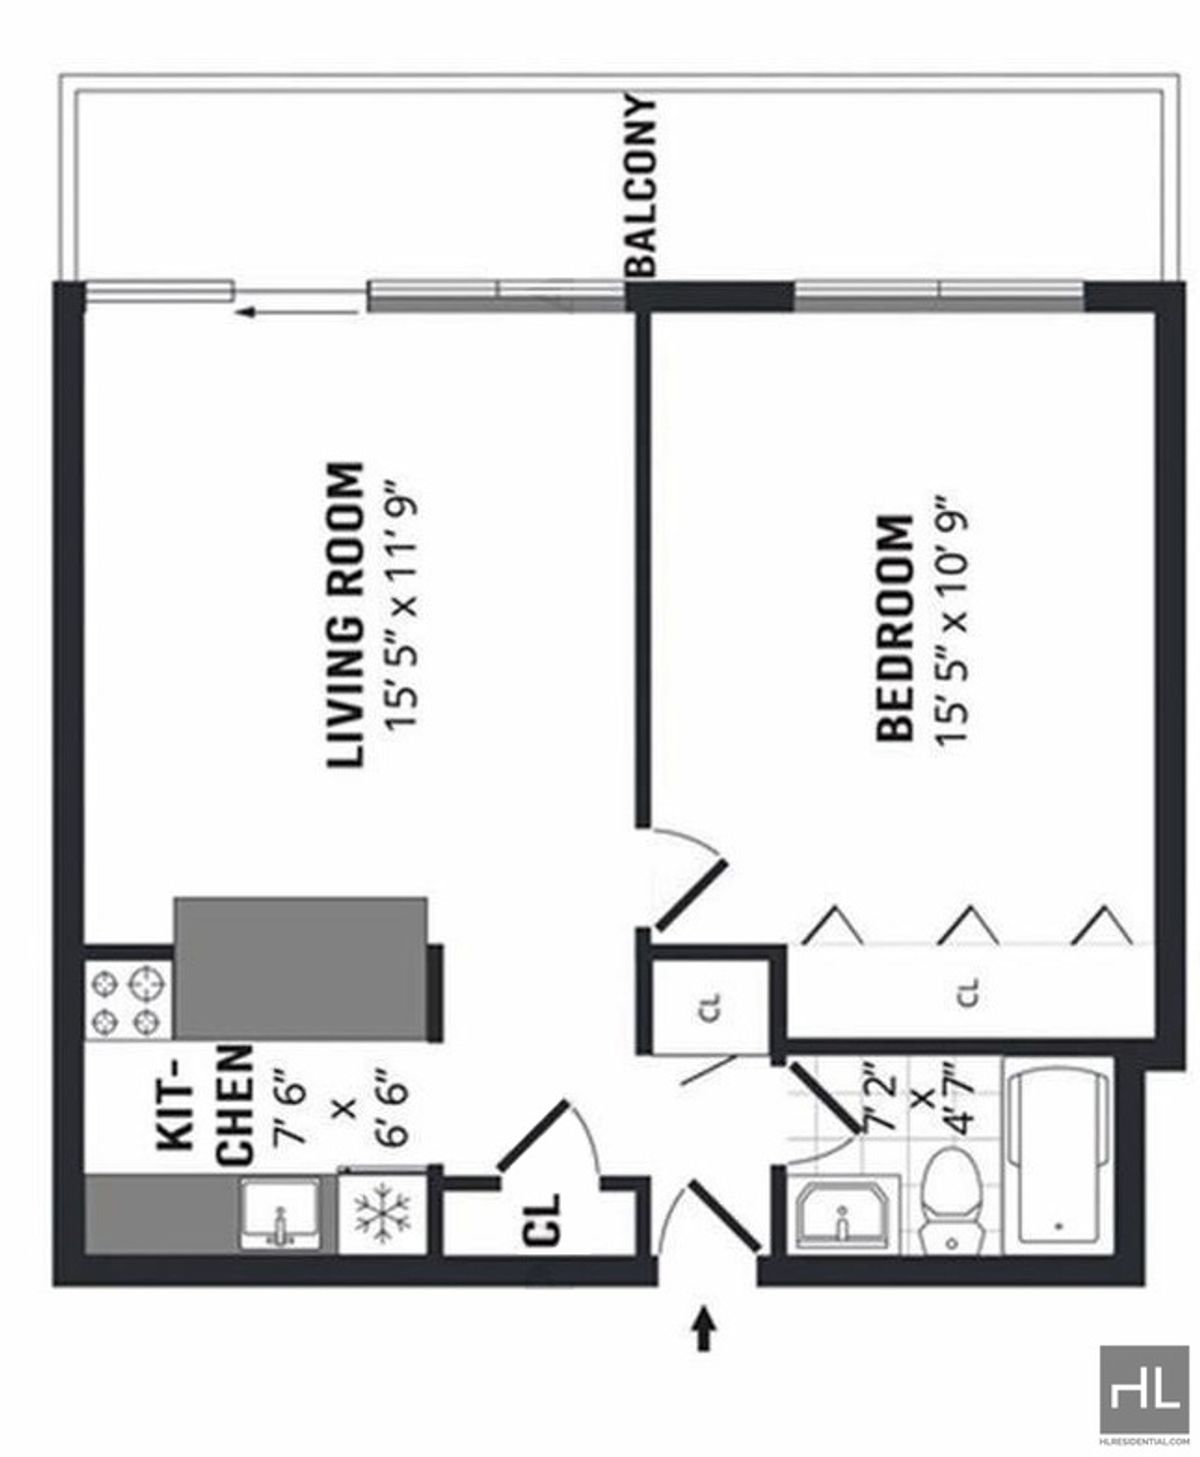 Floorplan for 25-40 Shore Boulevard